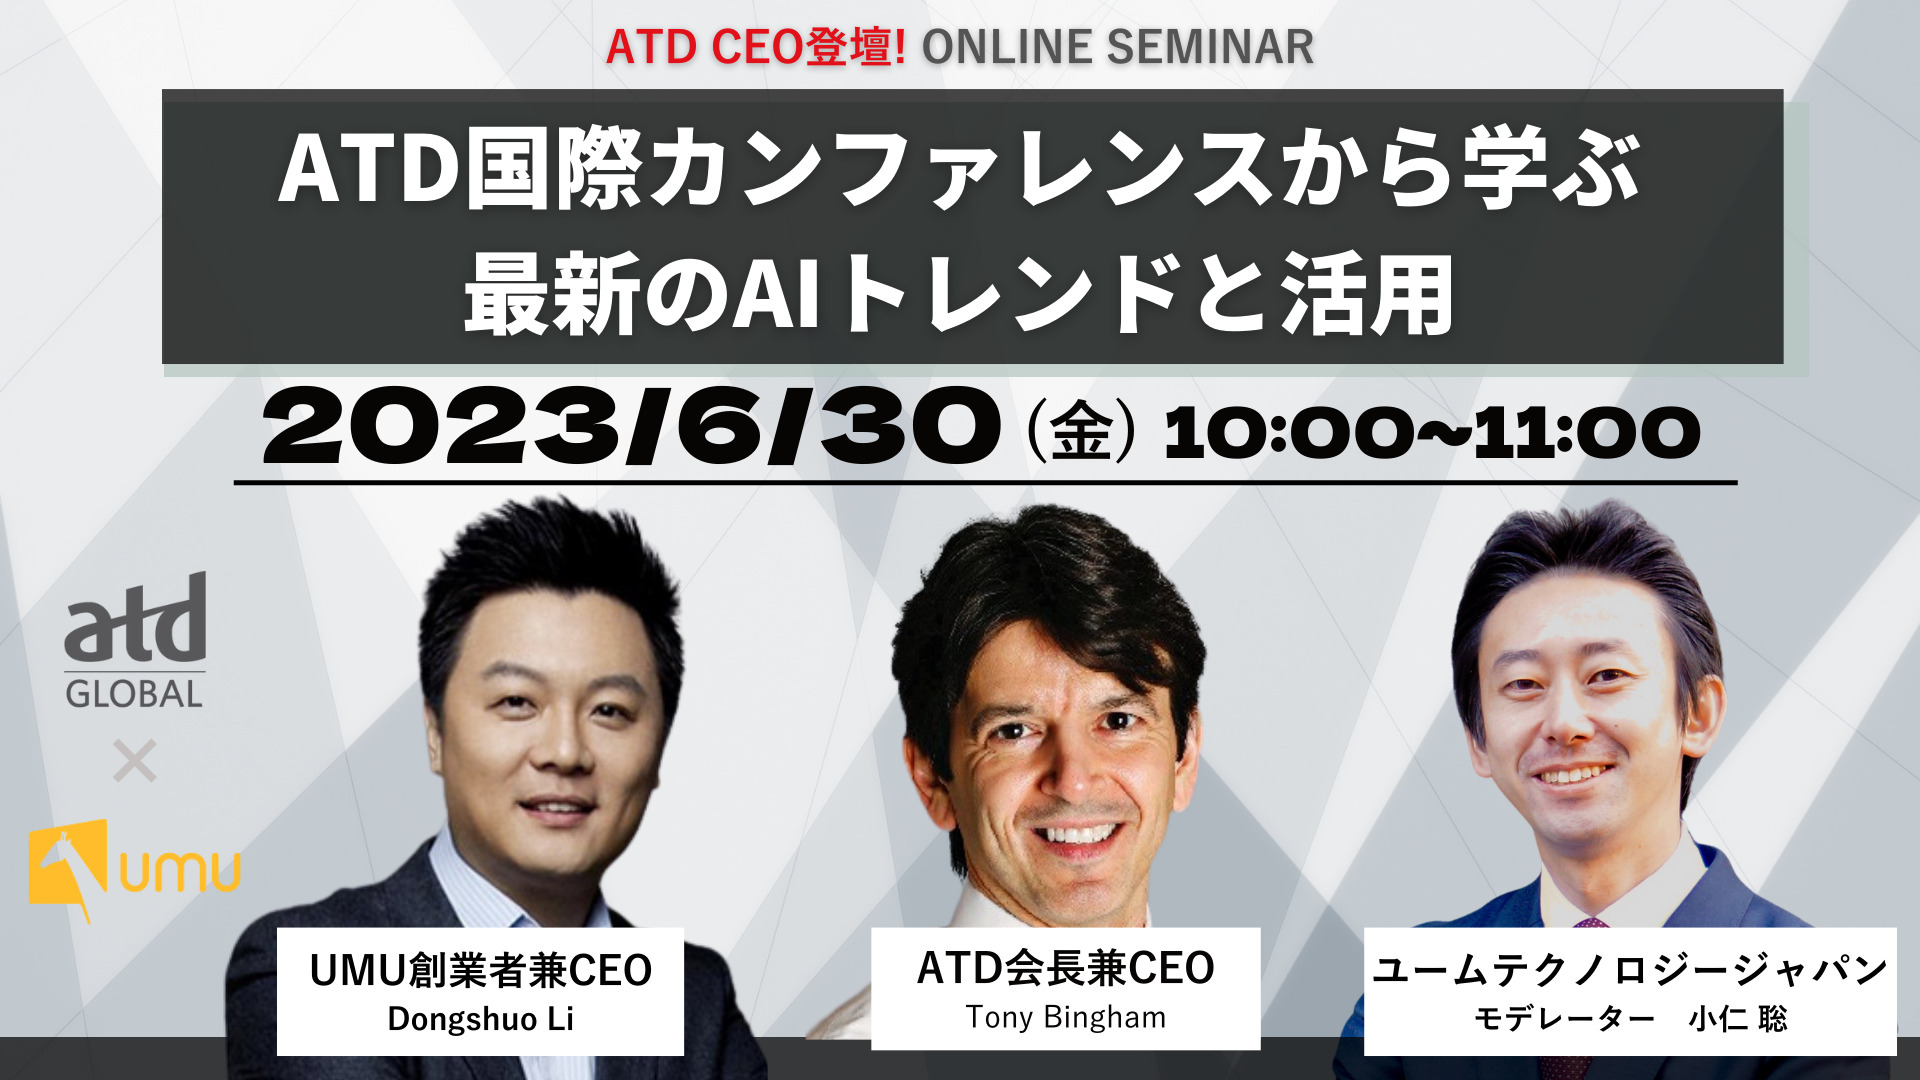 ATD CEO登壇!〉ATD国際カンファレンスから学ぶ、最新のAIトレンドと活用- ユームテクノロジージャパン株式会社（UMU Technology  Japan）